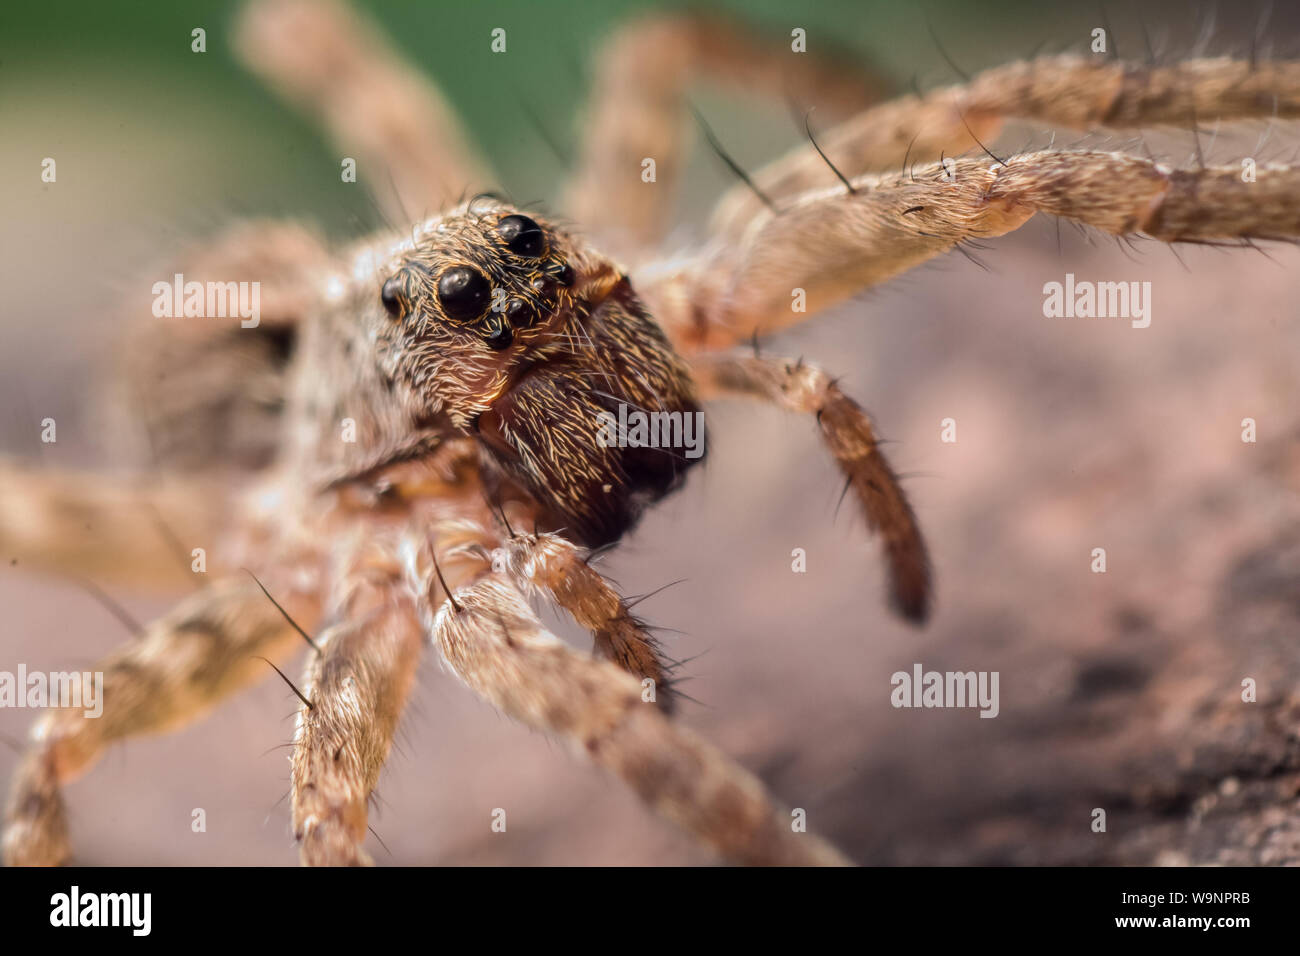 Close-up of a wolf spider lumineux dans des jardins communs, l'extrême macro avec l'arachnide face en détail Banque D'Images